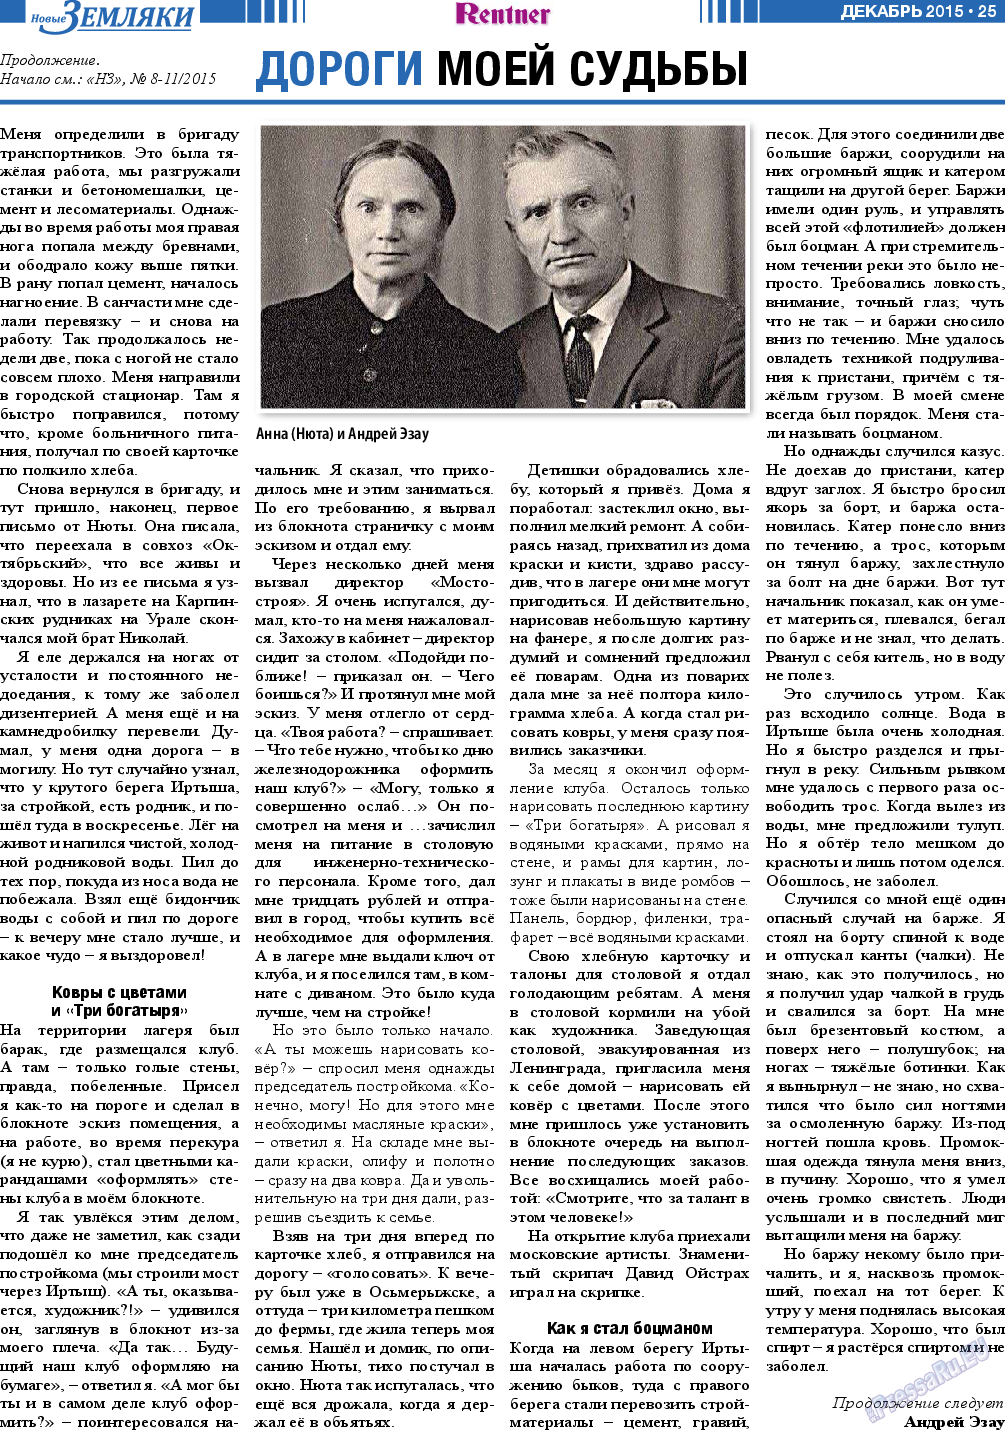 Новые Земляки, газета. 2015 №12 стр.25